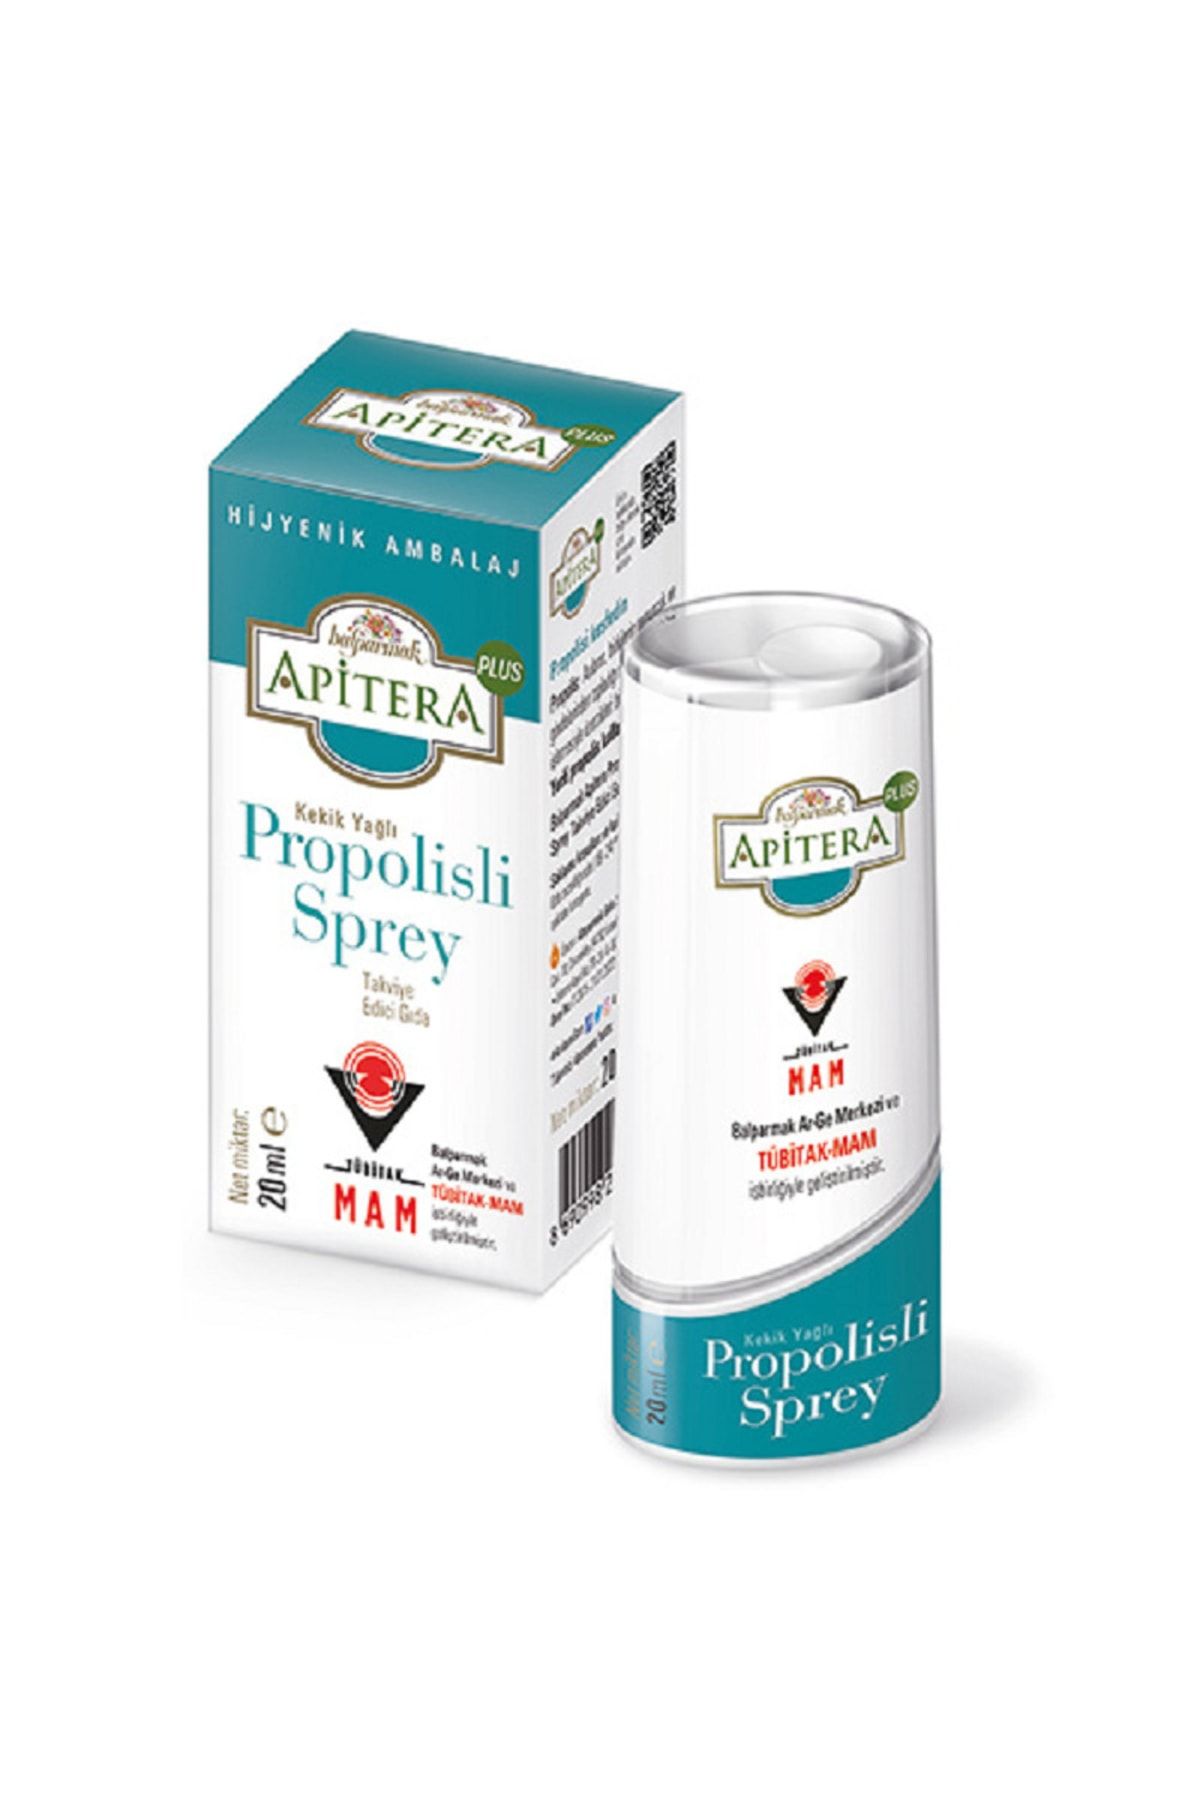 Balparmak Apitera Plus Kekik Yağlı Propolisli Sprey 20 ml